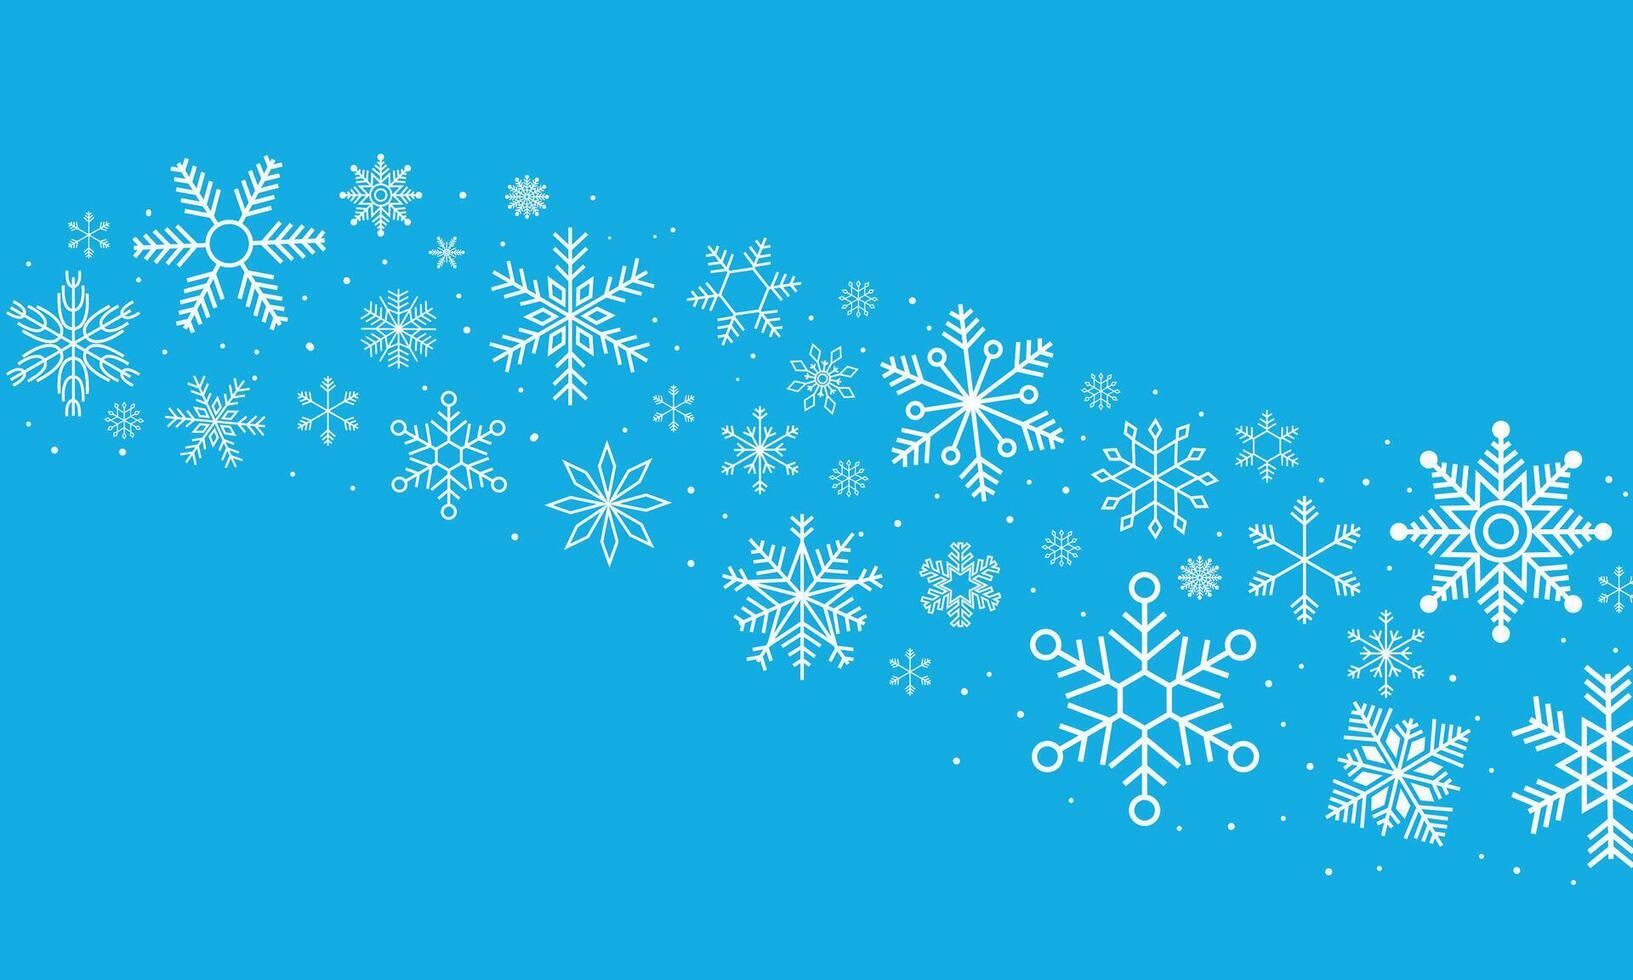 decorativo copo de nieve ola. invierno congelado Nevado copos nieve estrellas borde, nevada nevada curva remolino blanco tormenta de nieve divisor. vector ilustración